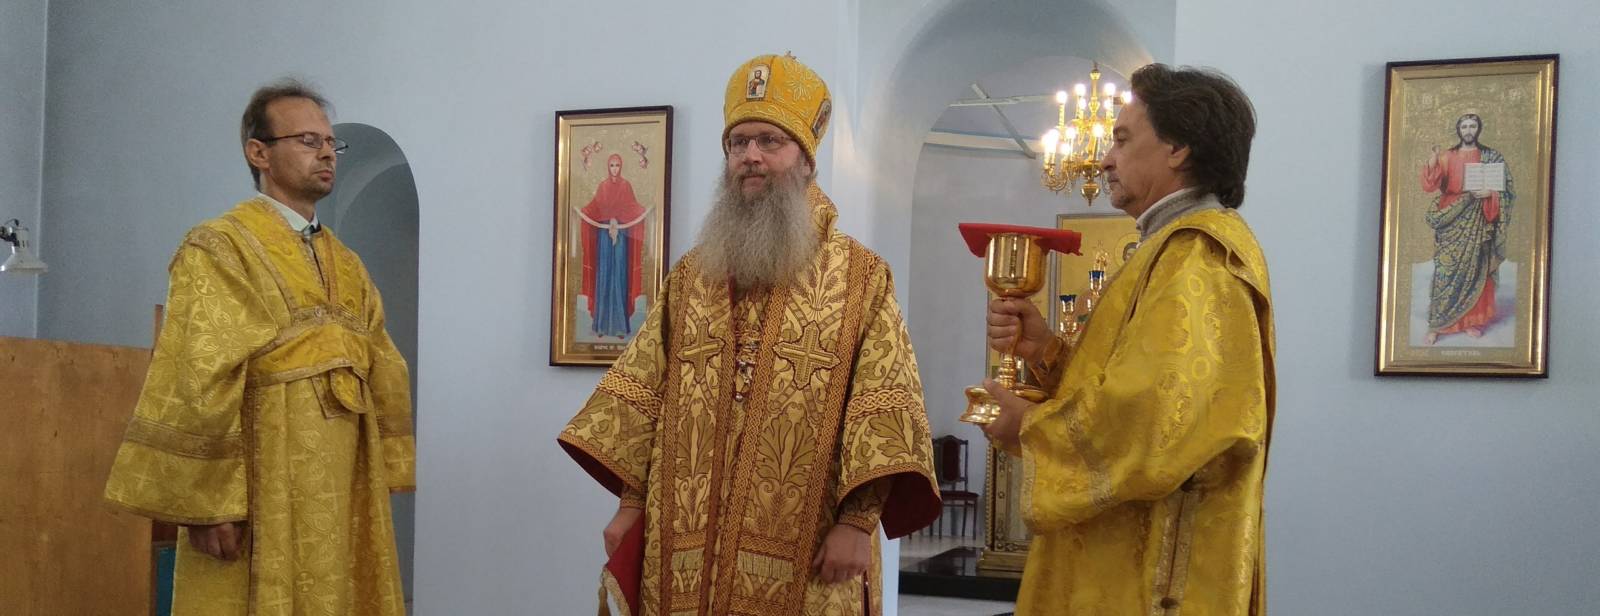 Божественную литургию в Покровском кафедральном соборе г. Урюпинска.